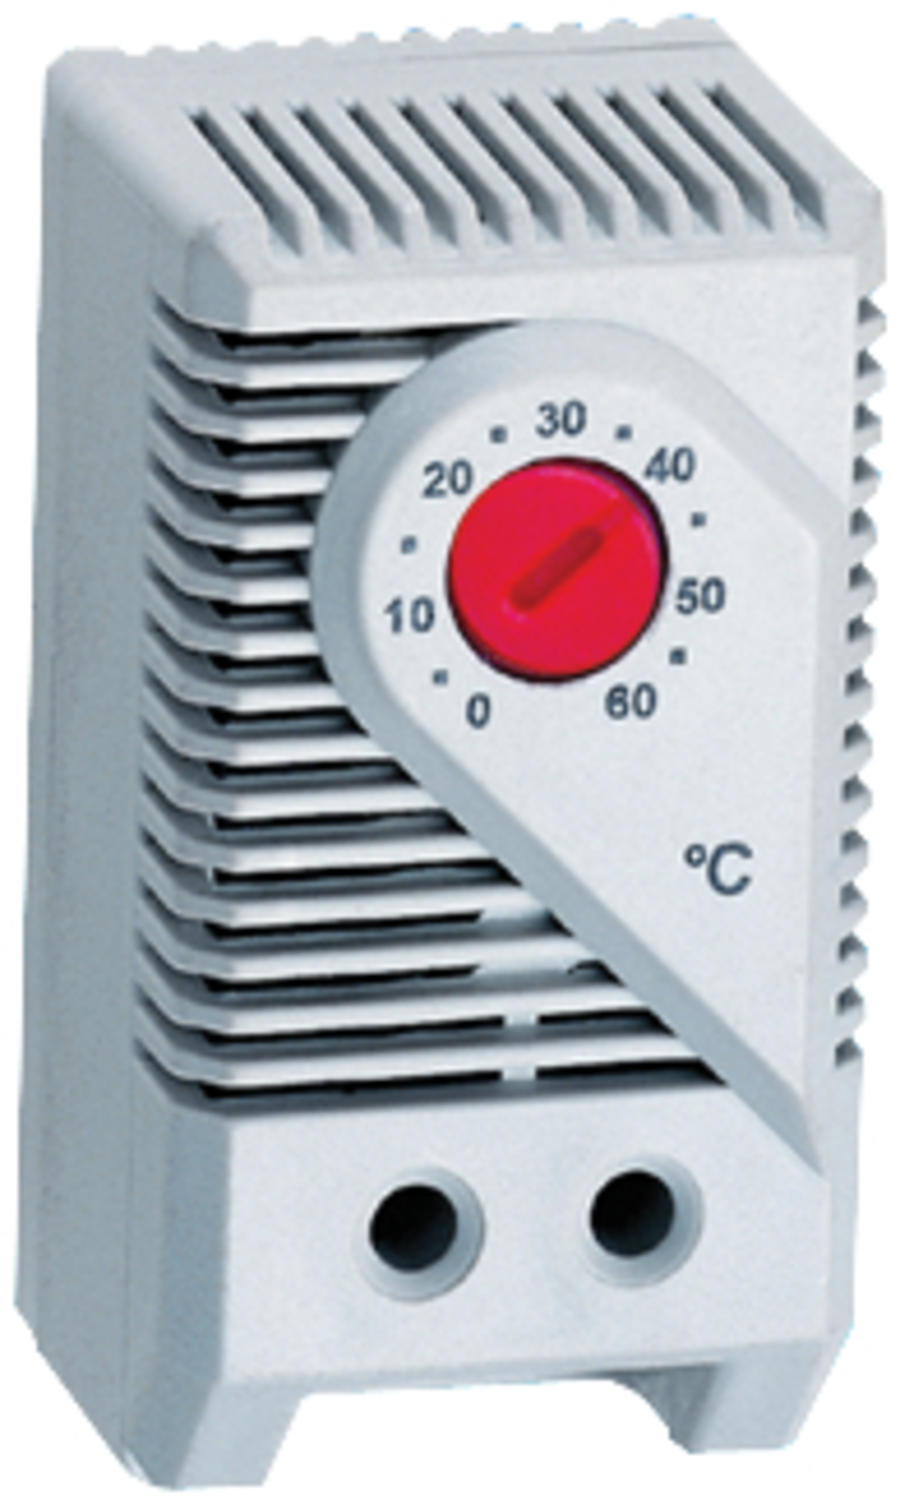 KTS 011 automática interruptor de temperatura 110v-250v thermostatsteuerungyrde 